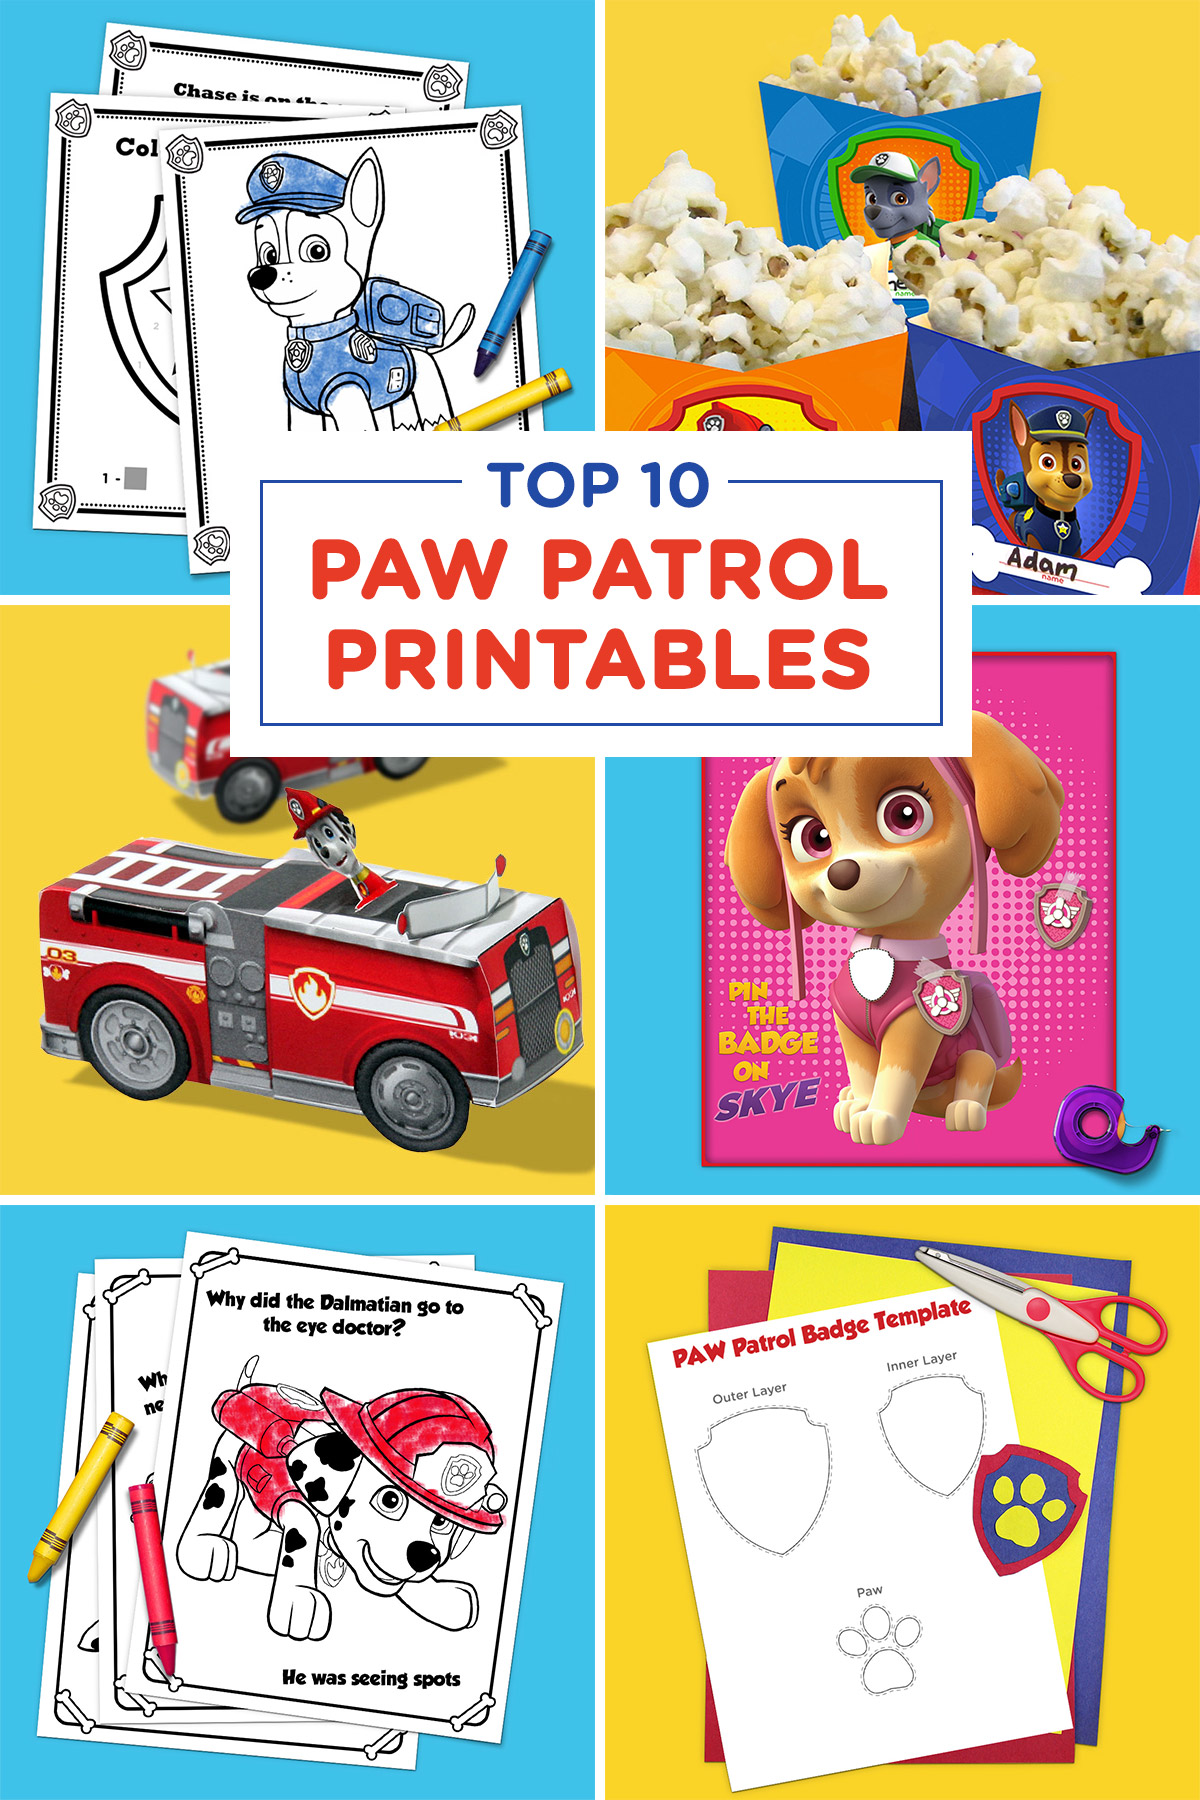 Top 10 PAW Patrol Printables